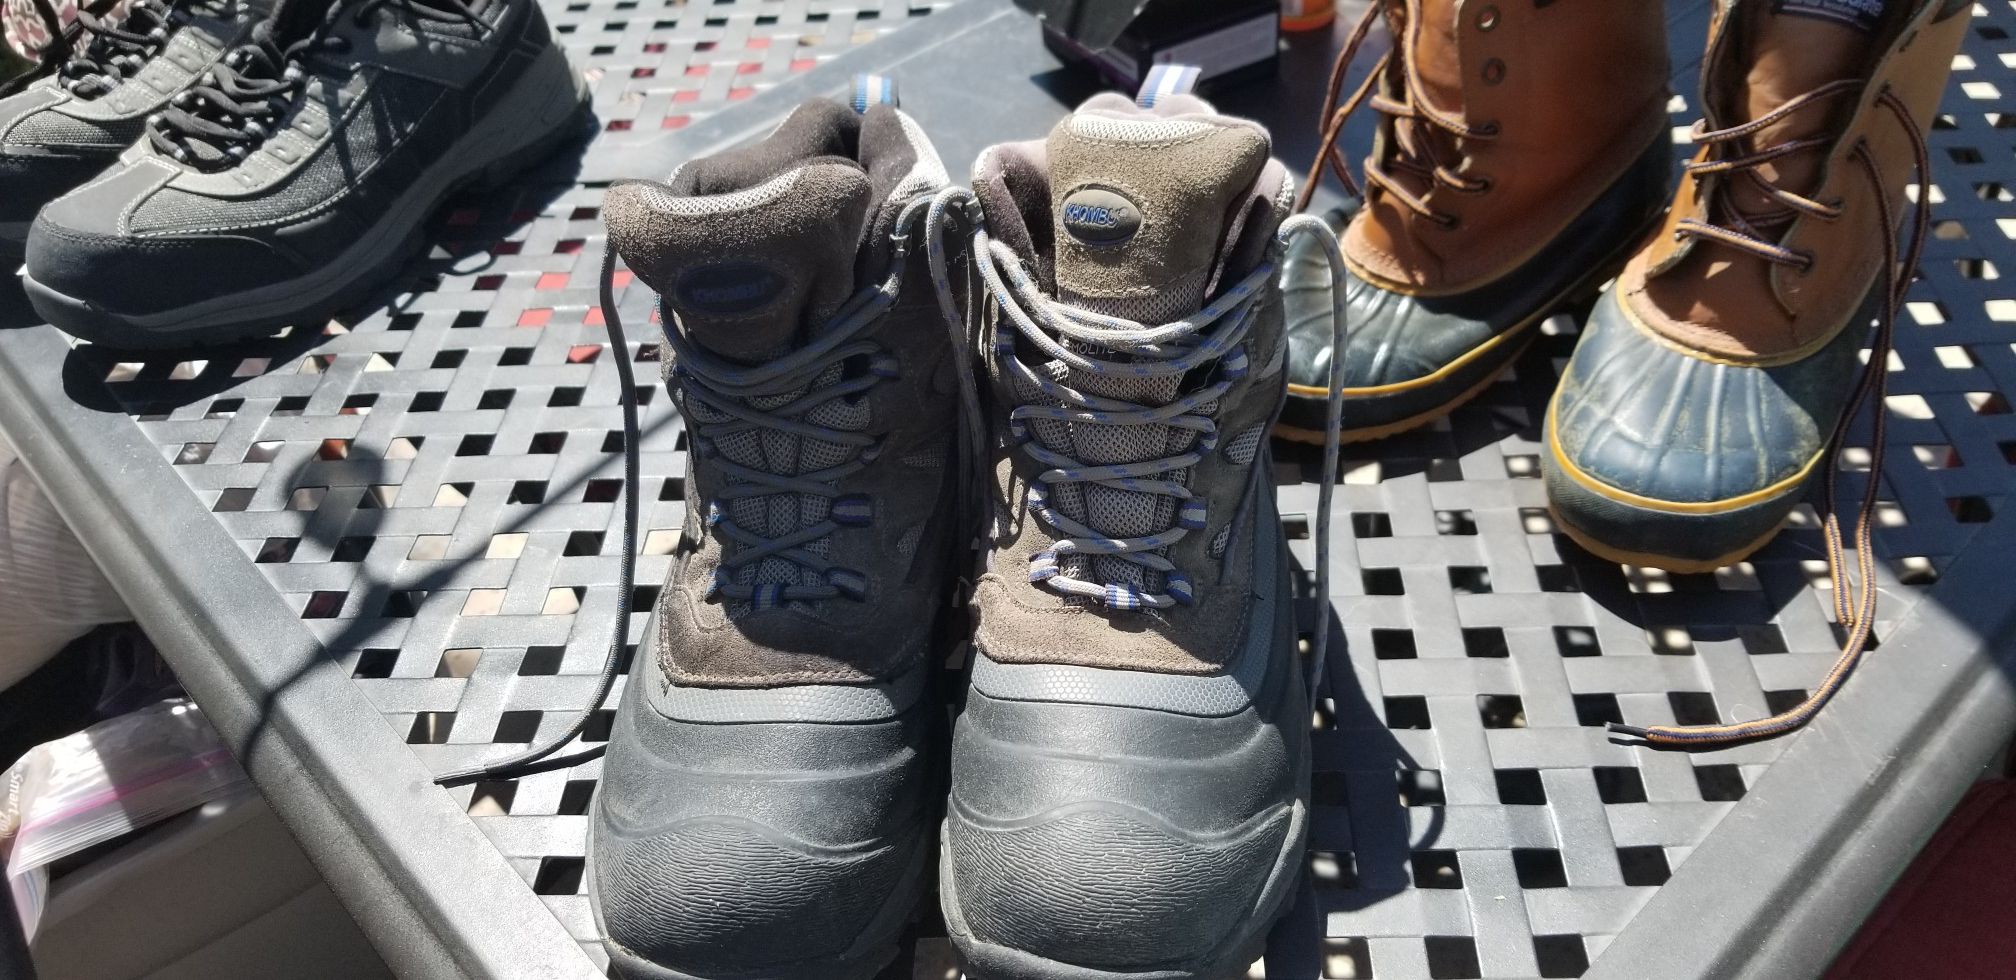 Khumbu boots sz 12